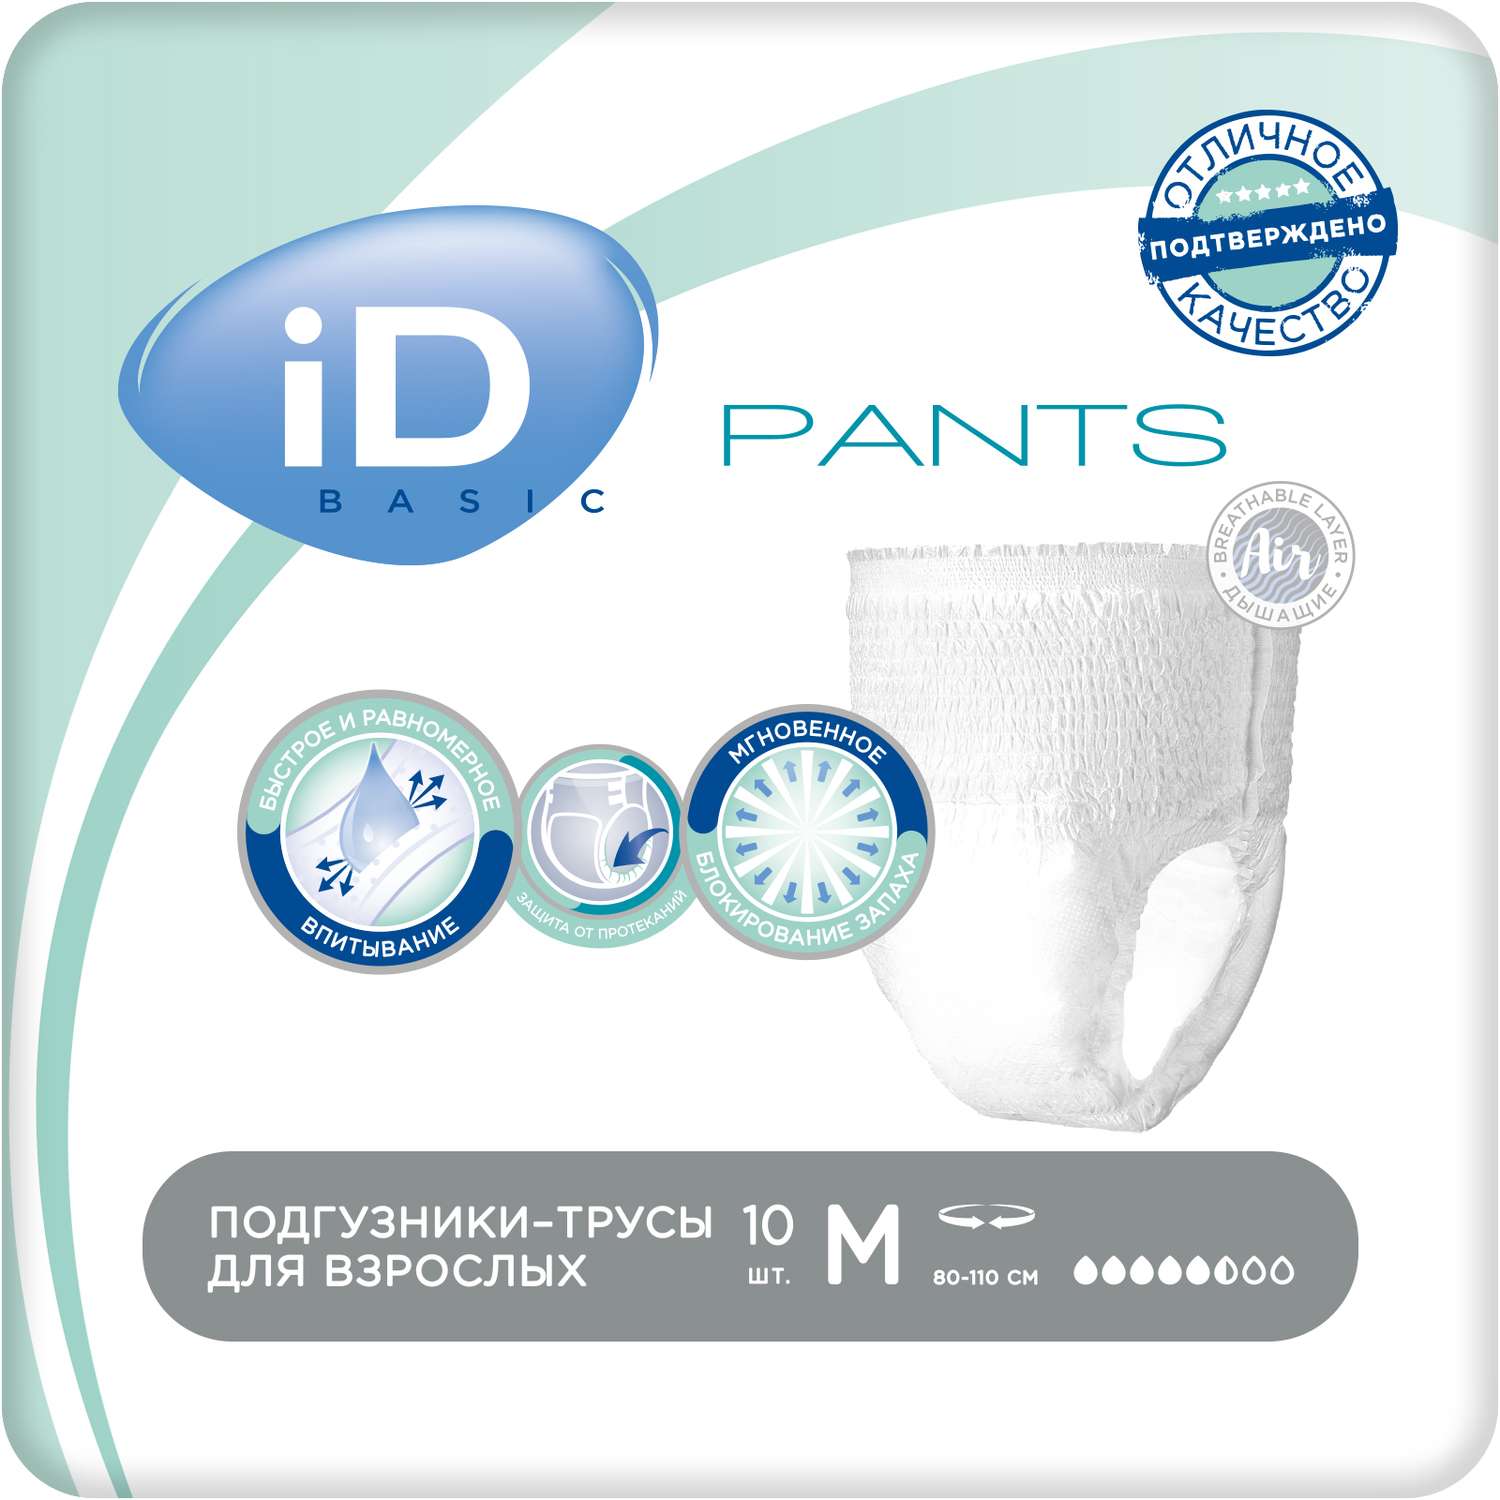 Подгузники-трусы для взрослых iD Pants basic M 10 шт - фото 1